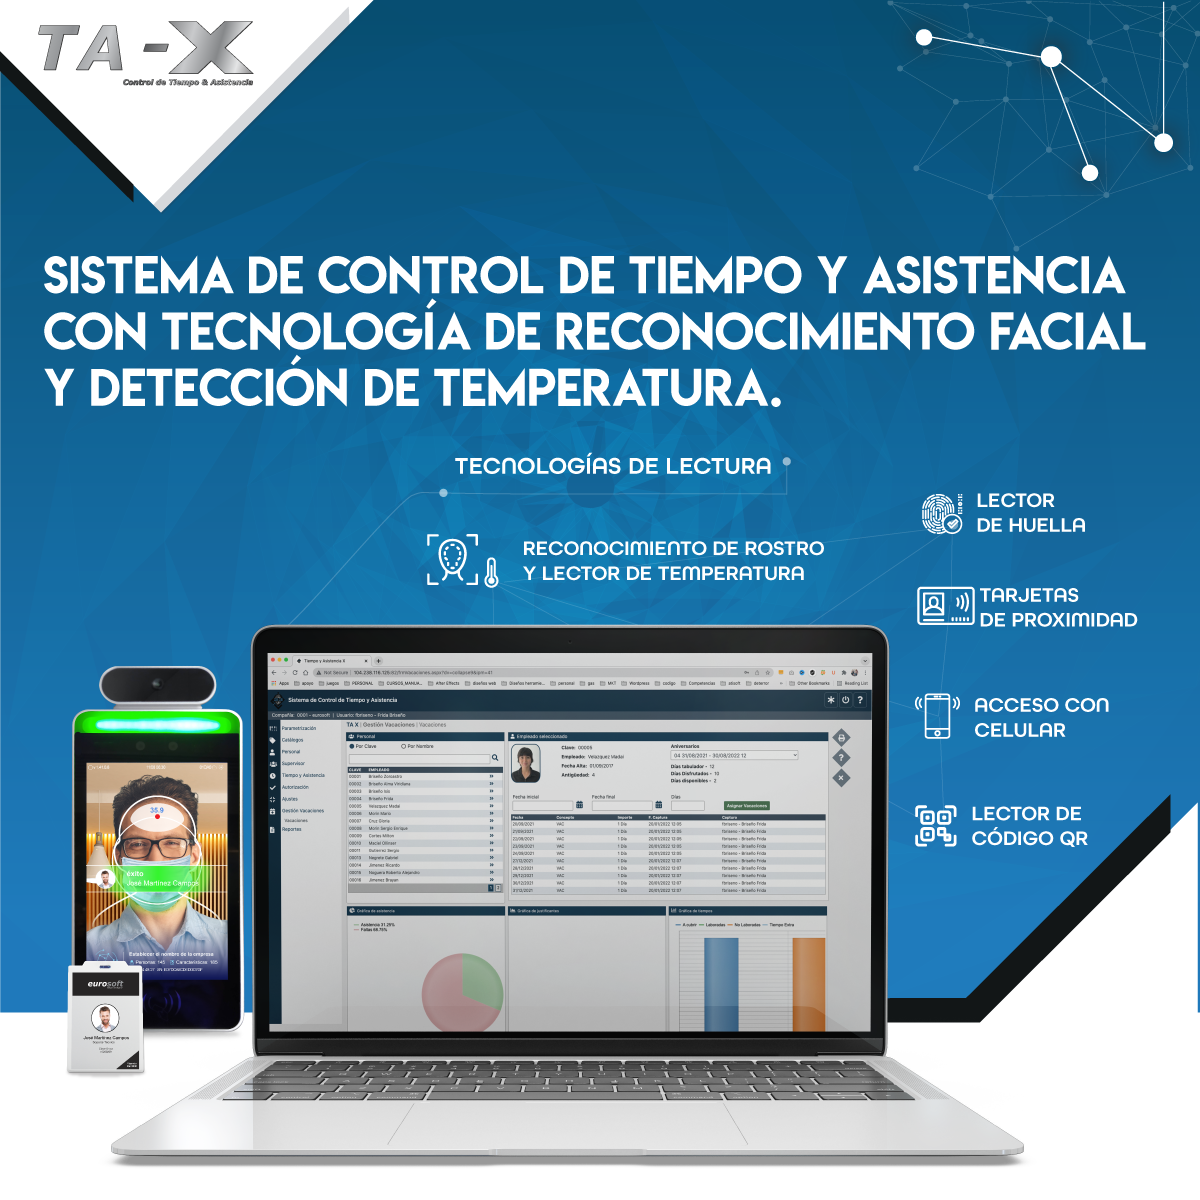 Control de tiempo y asistencia para empresas TA-X 2020